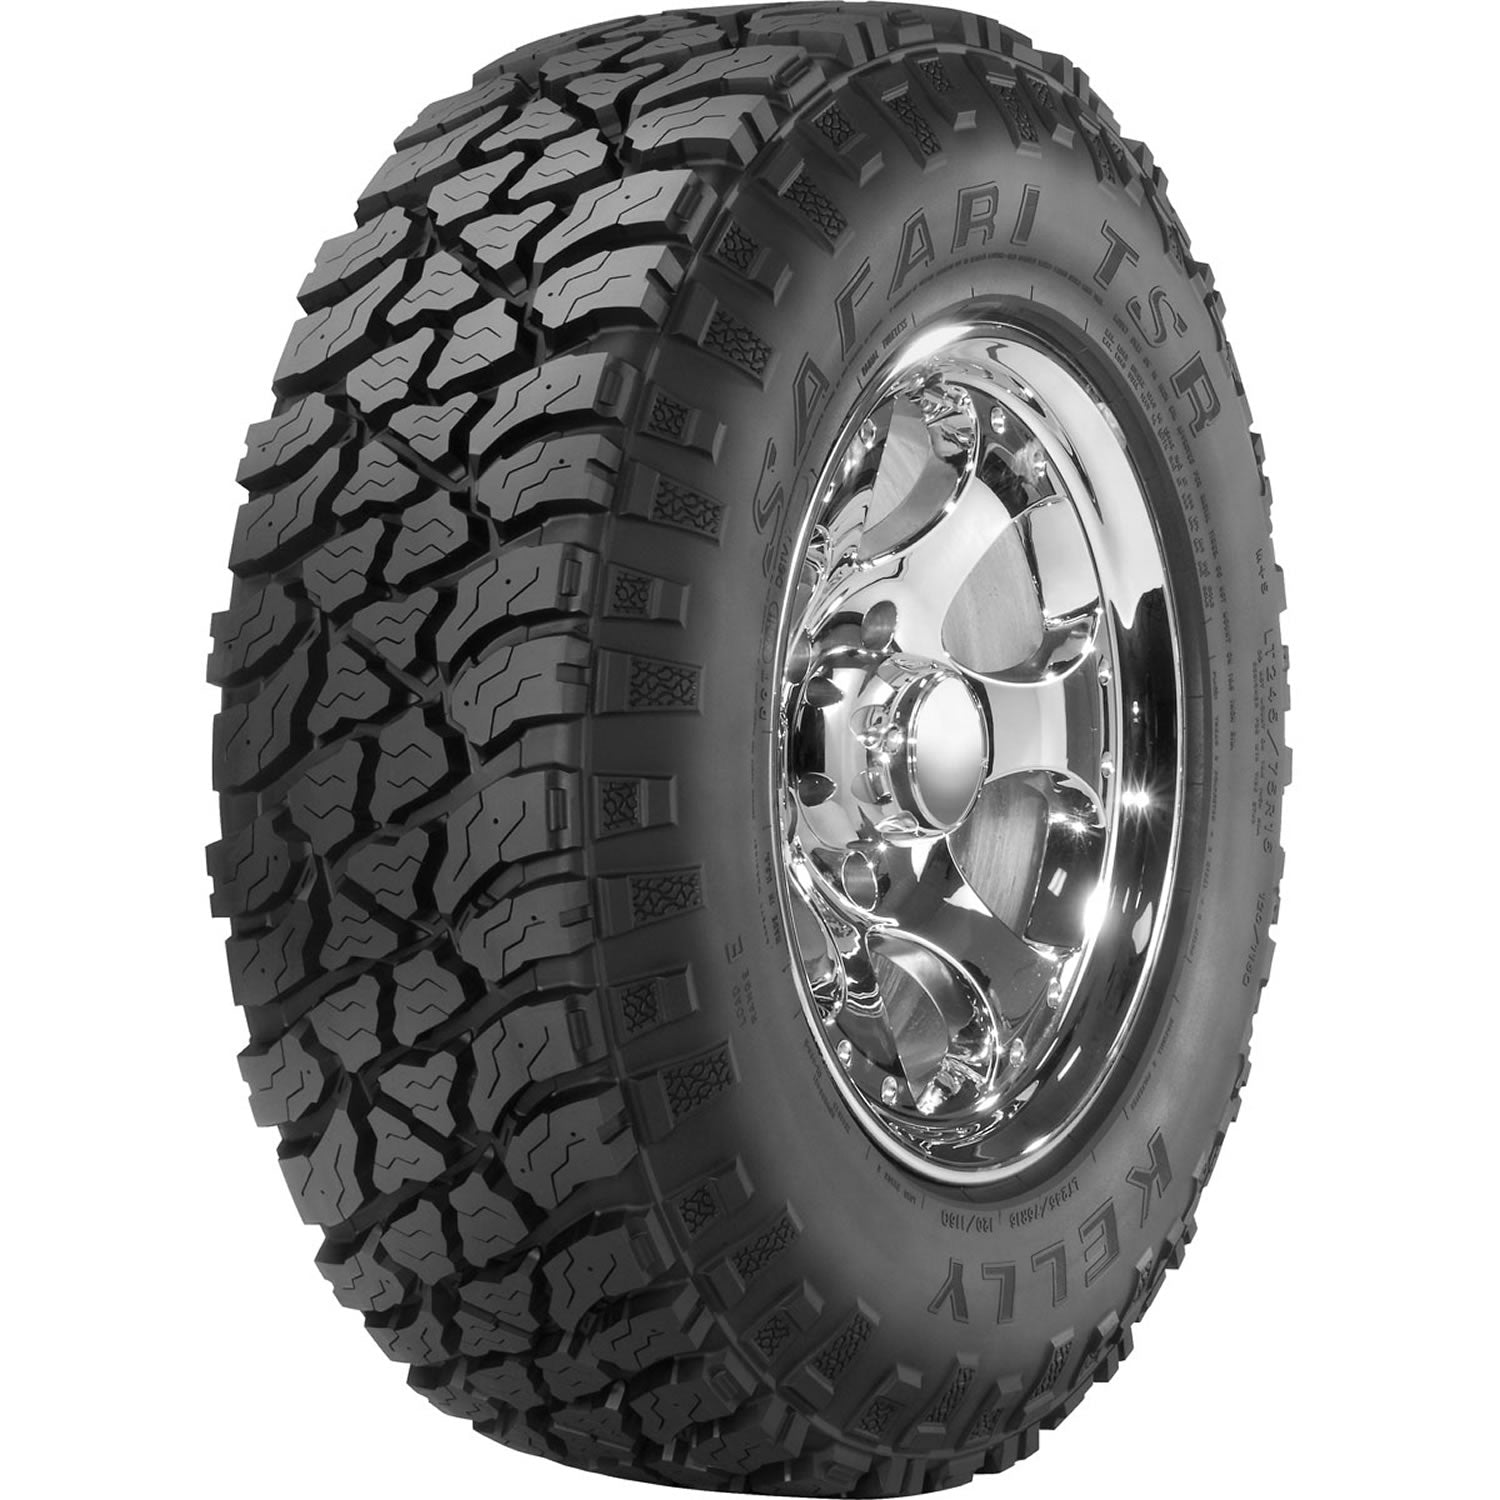 KELLY SAFARI TSR LT265/70R17 (31.7X10.7R 17) Tires